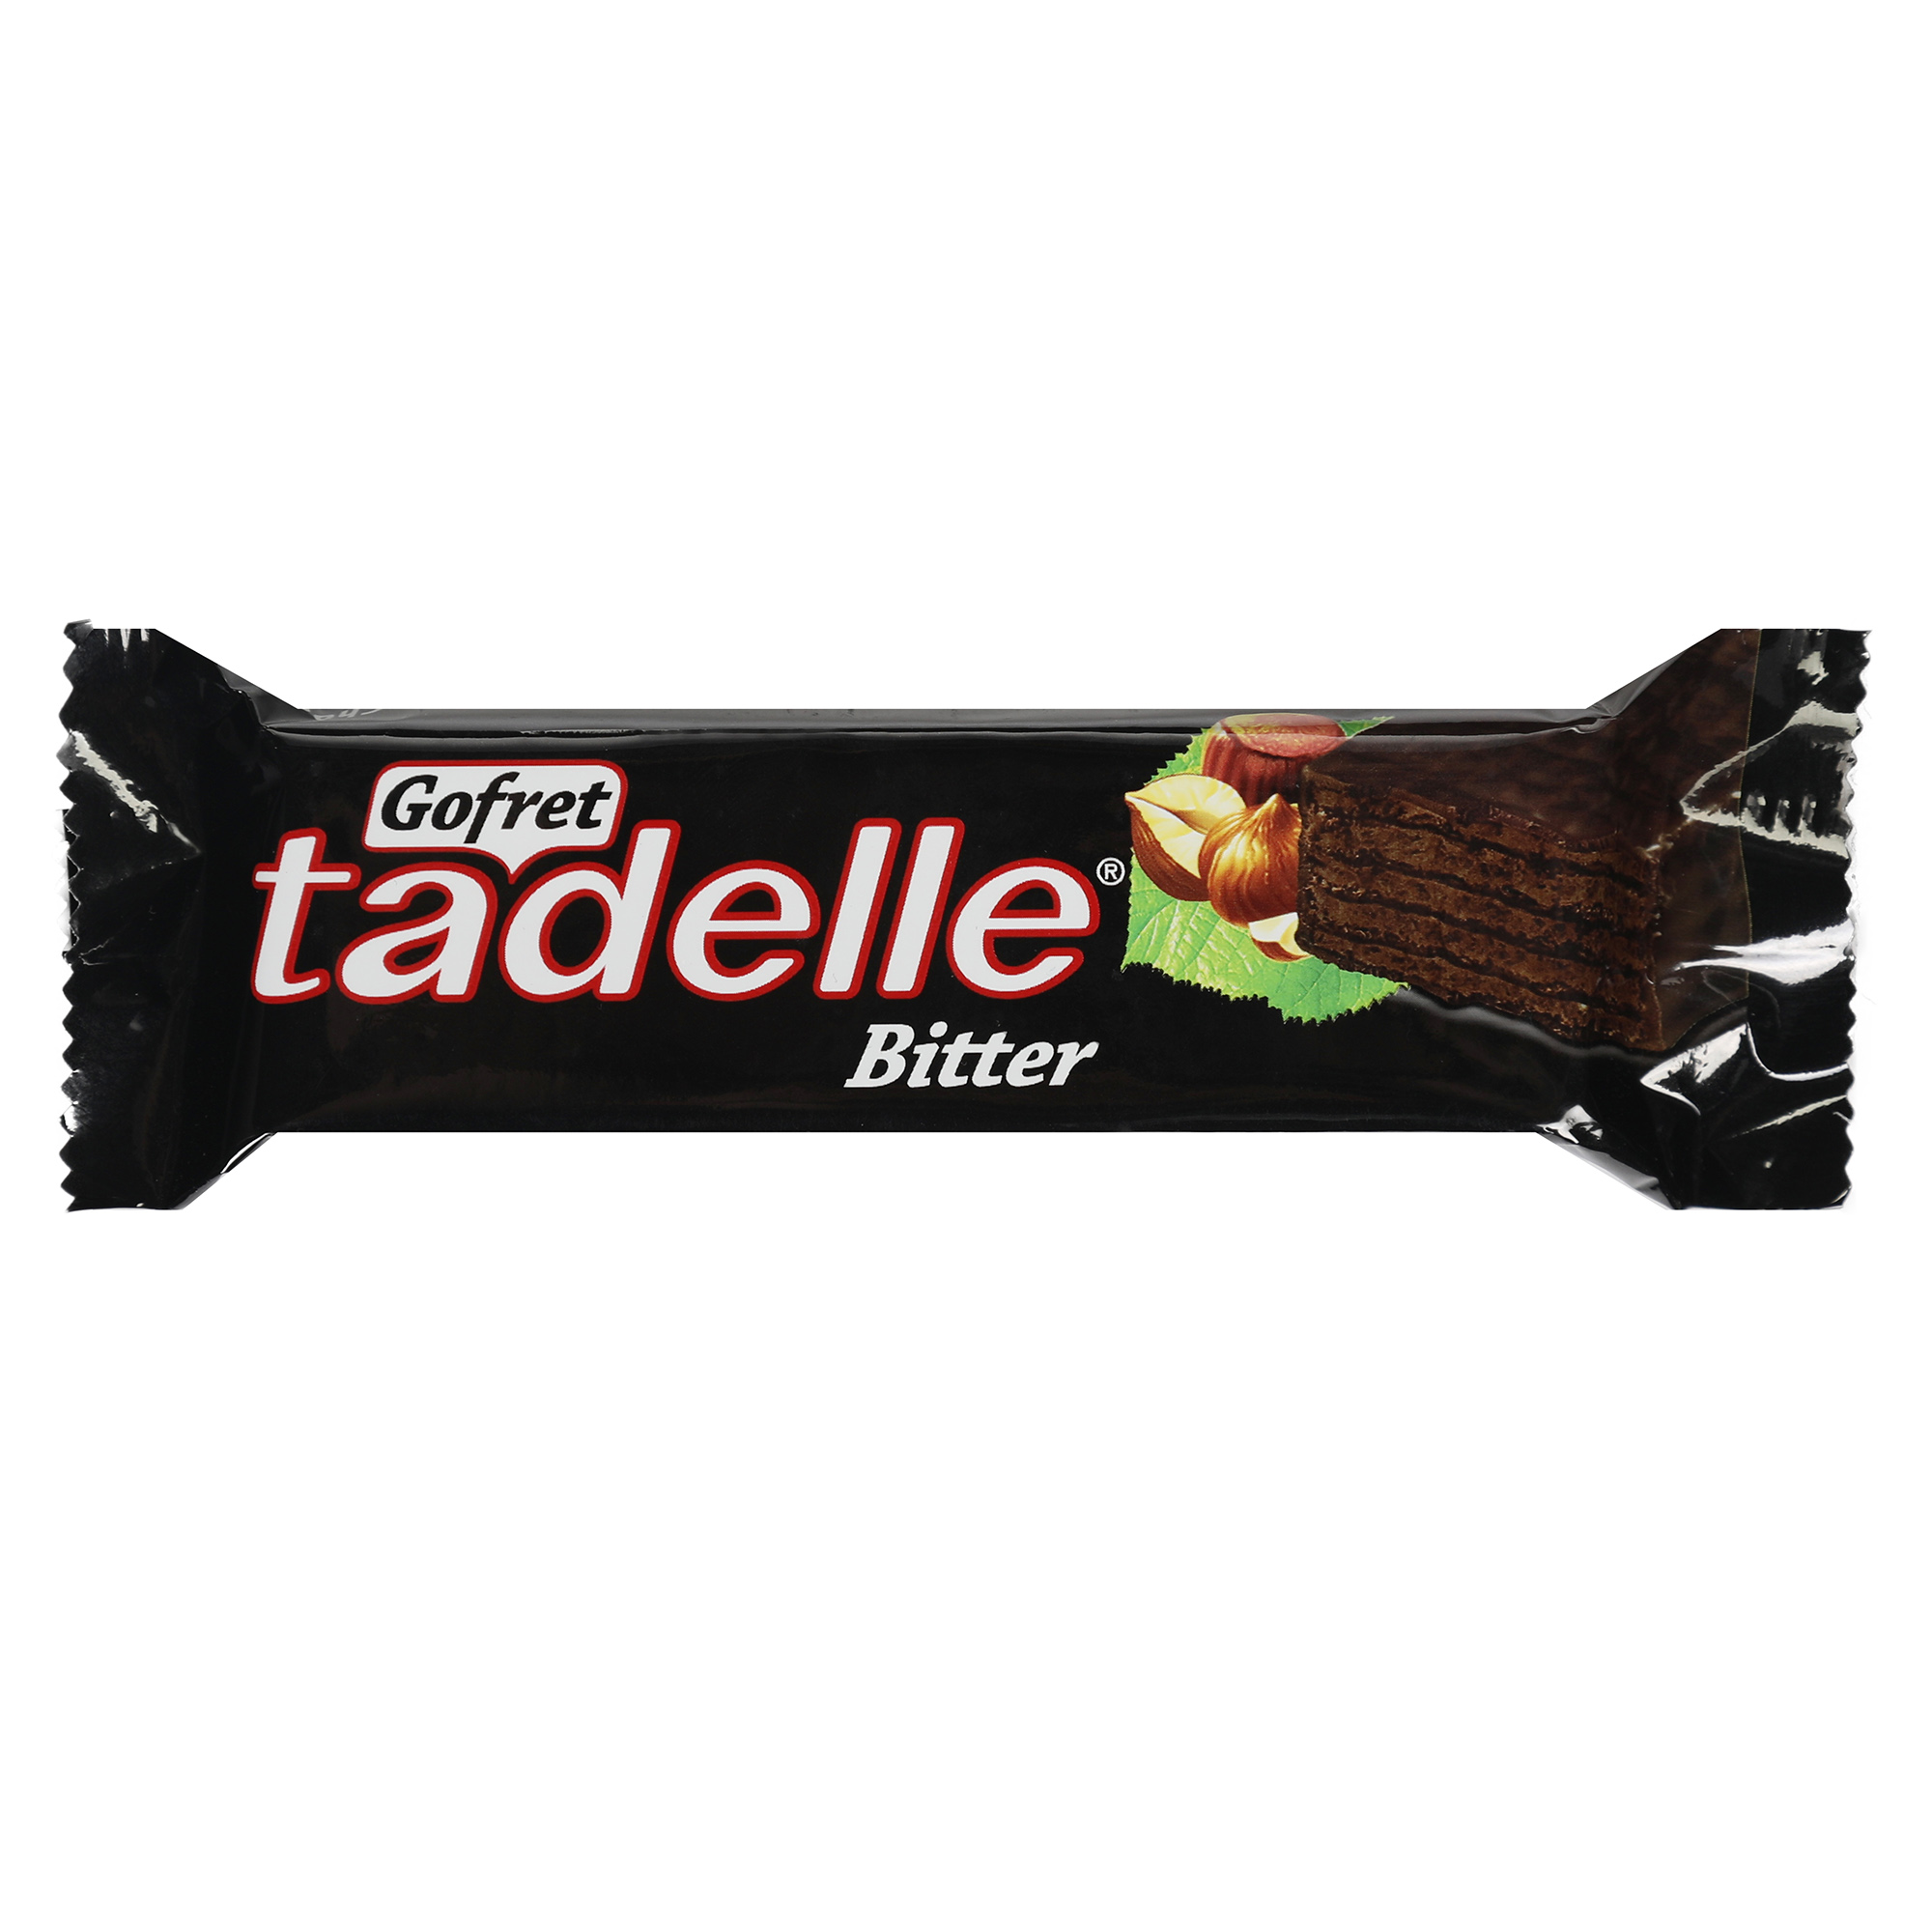 Вафли Sarelle с ореховым кремом в темном шоколаде, 35 г вафли sarelle с кремом из темного шоколада и какао 200 г